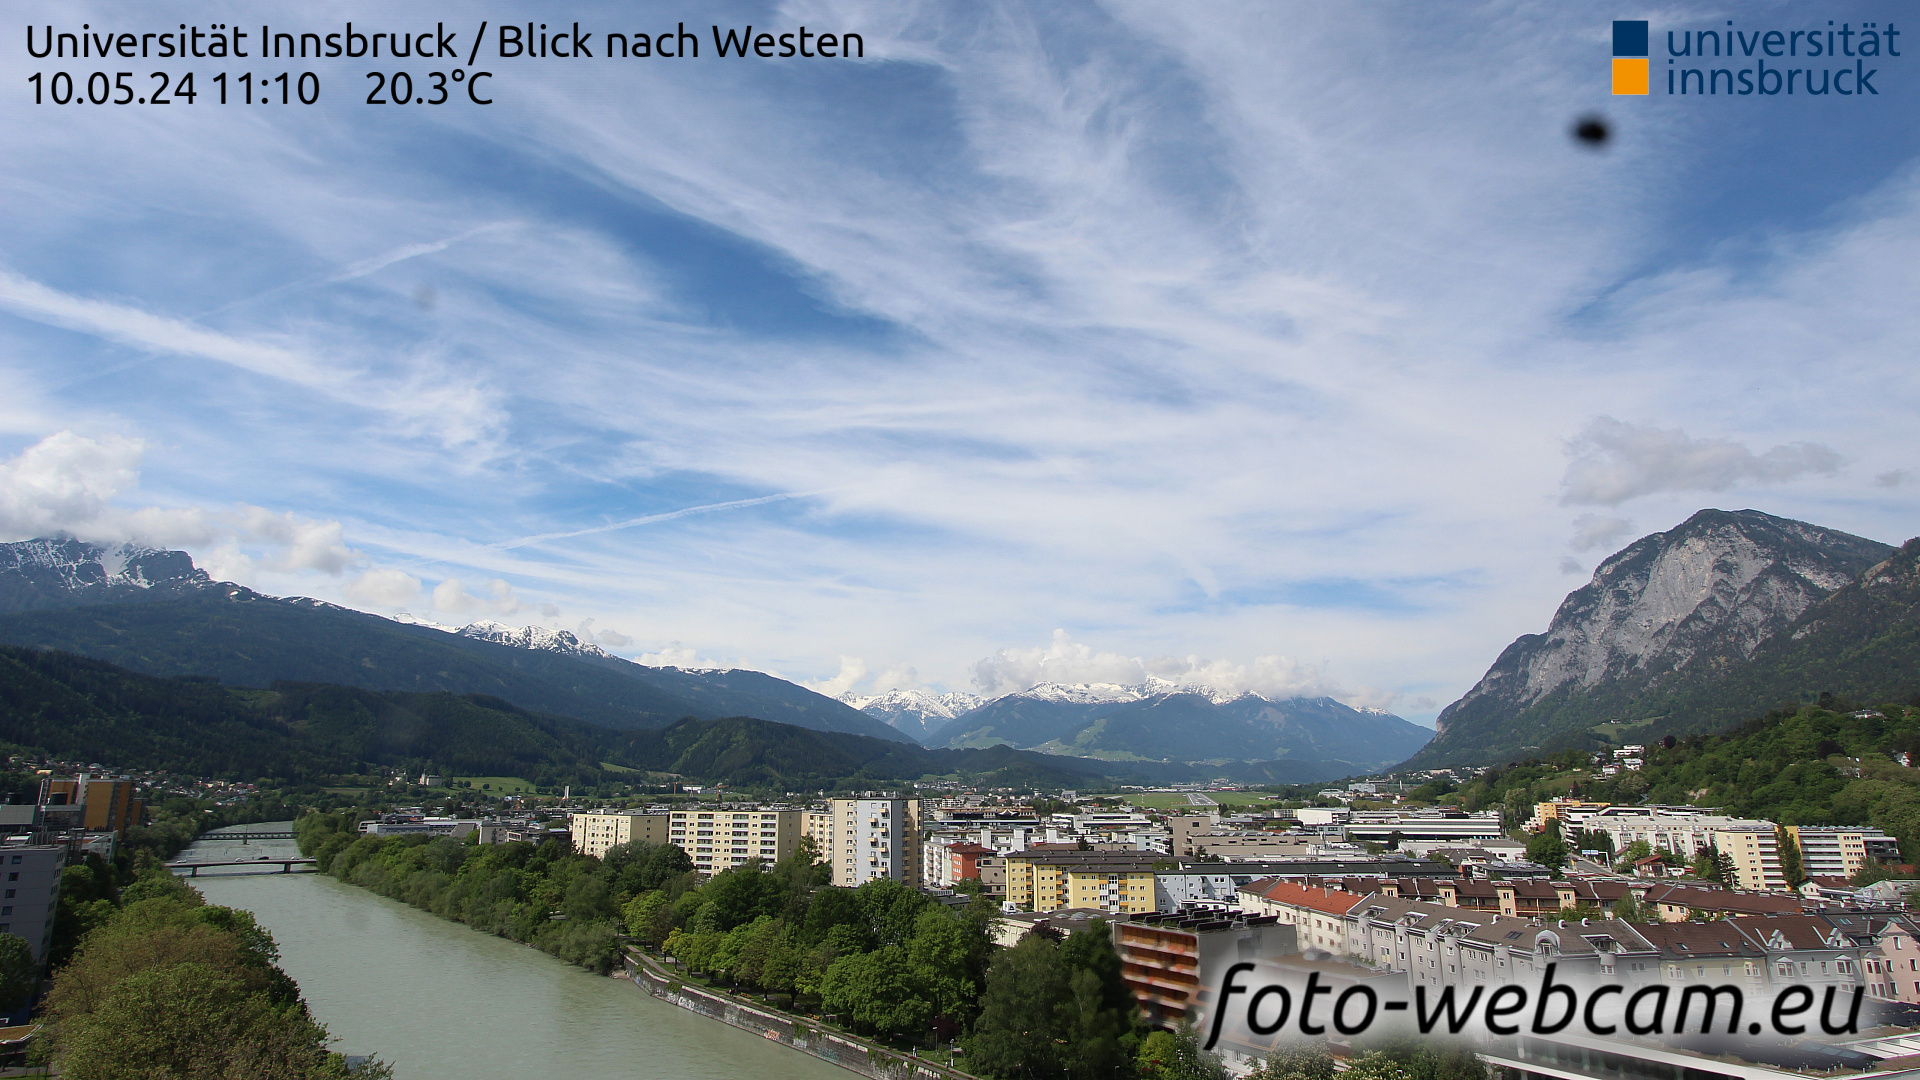 Innsbruck Di. 11:17